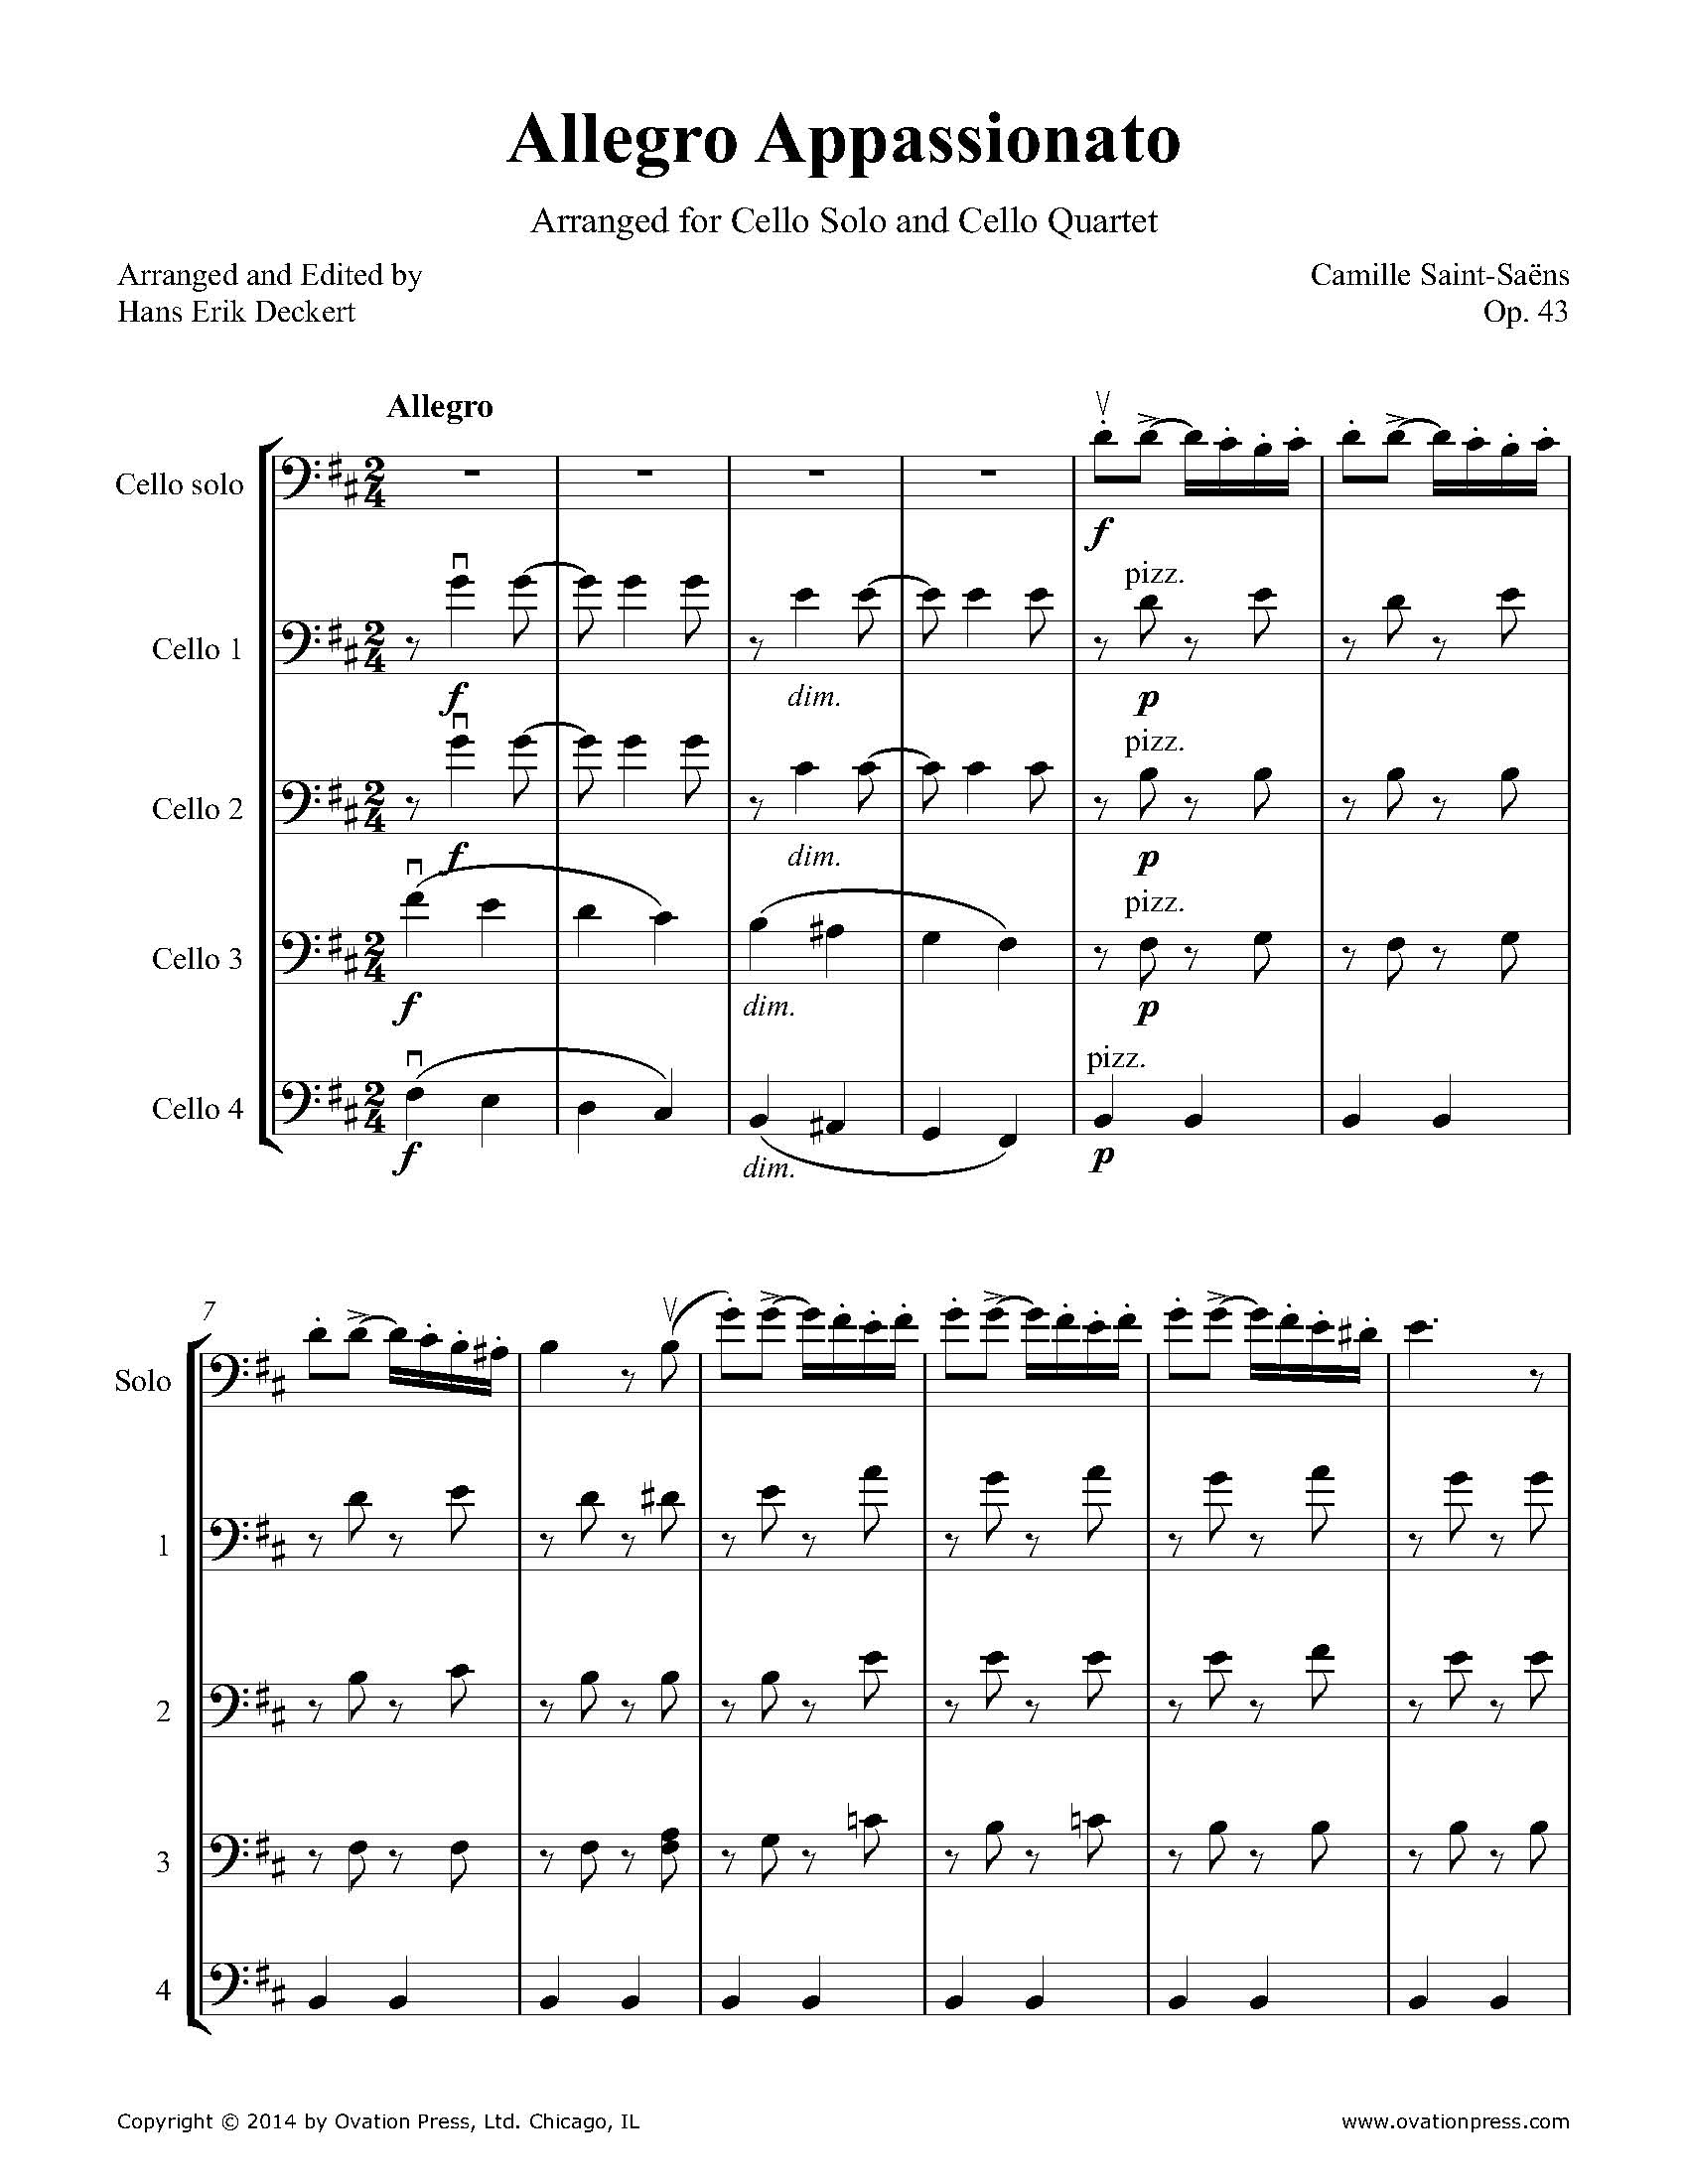 Saint-Saëns Allegro Appassionato Transcribed for Cello Quintet